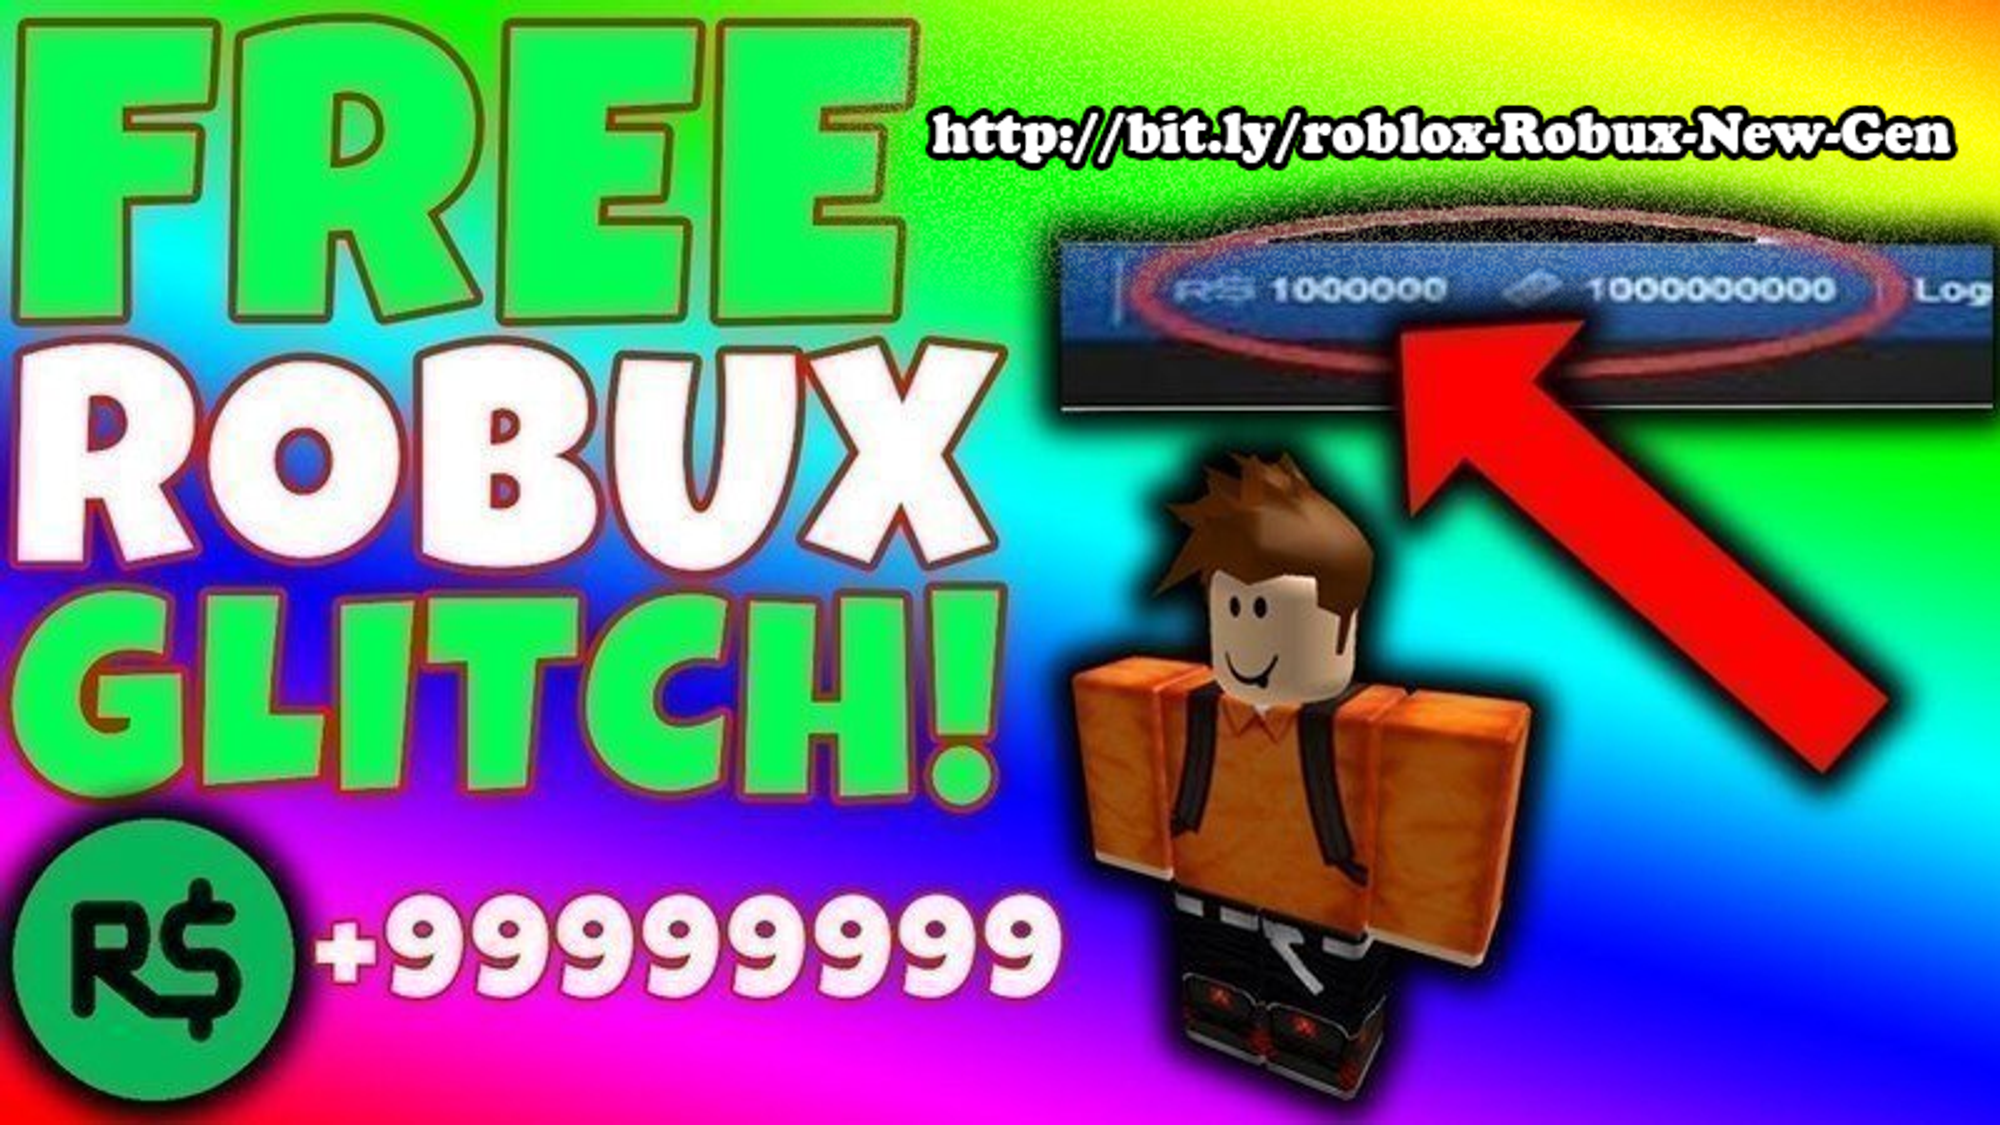 Come Avere Robux Gratis Su Roblox Pc Glitch To Get Robux Gg Robux - cara mendapatkan robux gratis di roblox